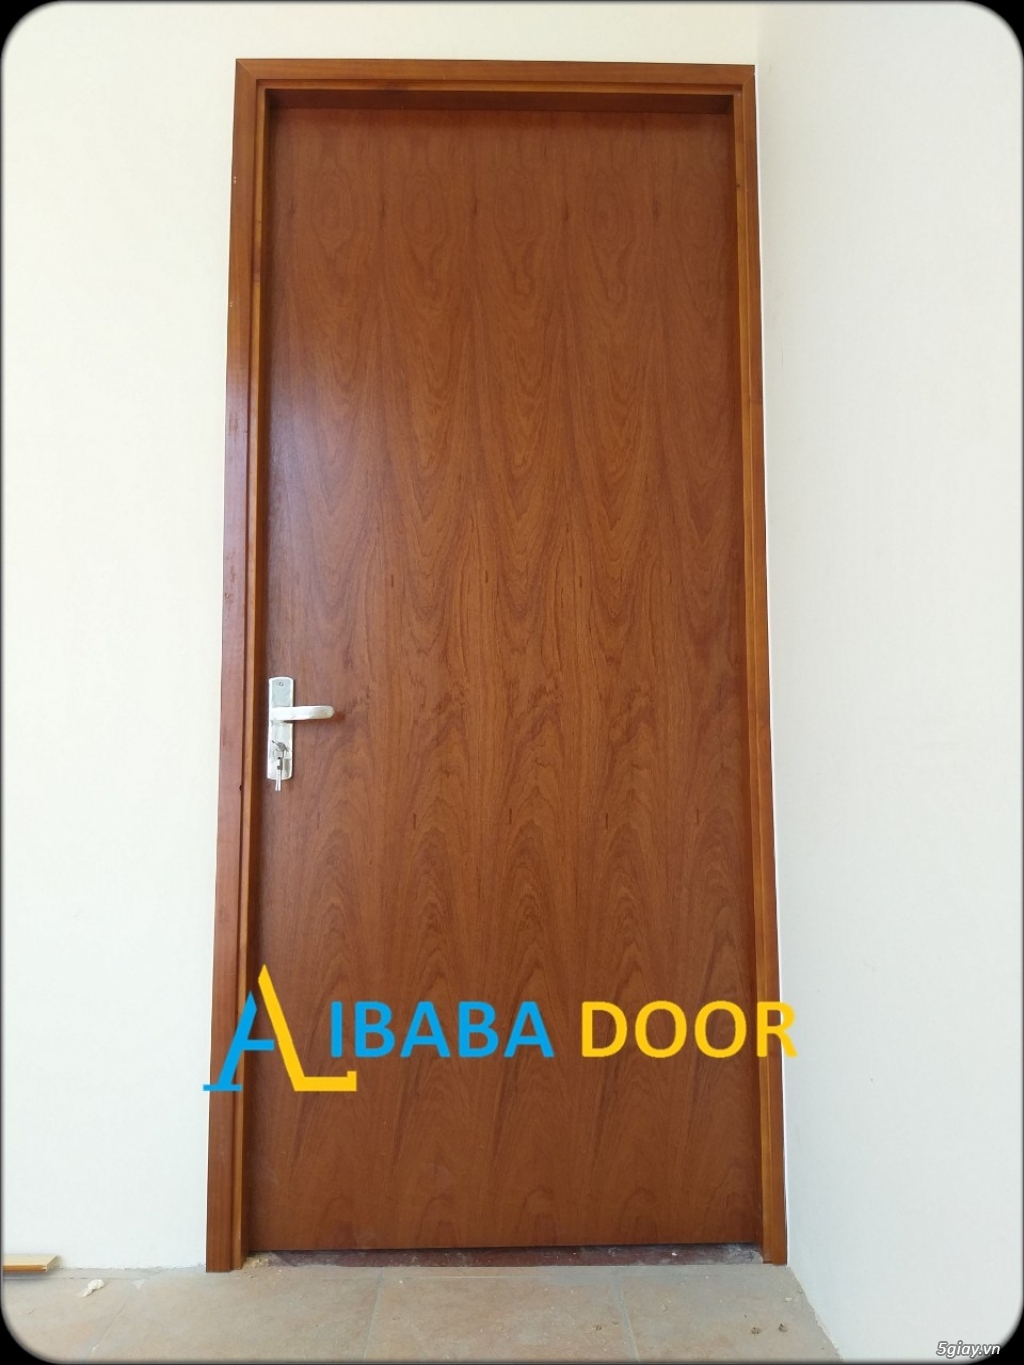 Alibabadoor chuyên cung cấp các loại cửa nhựa,cửa gỗ cho công trình - 2